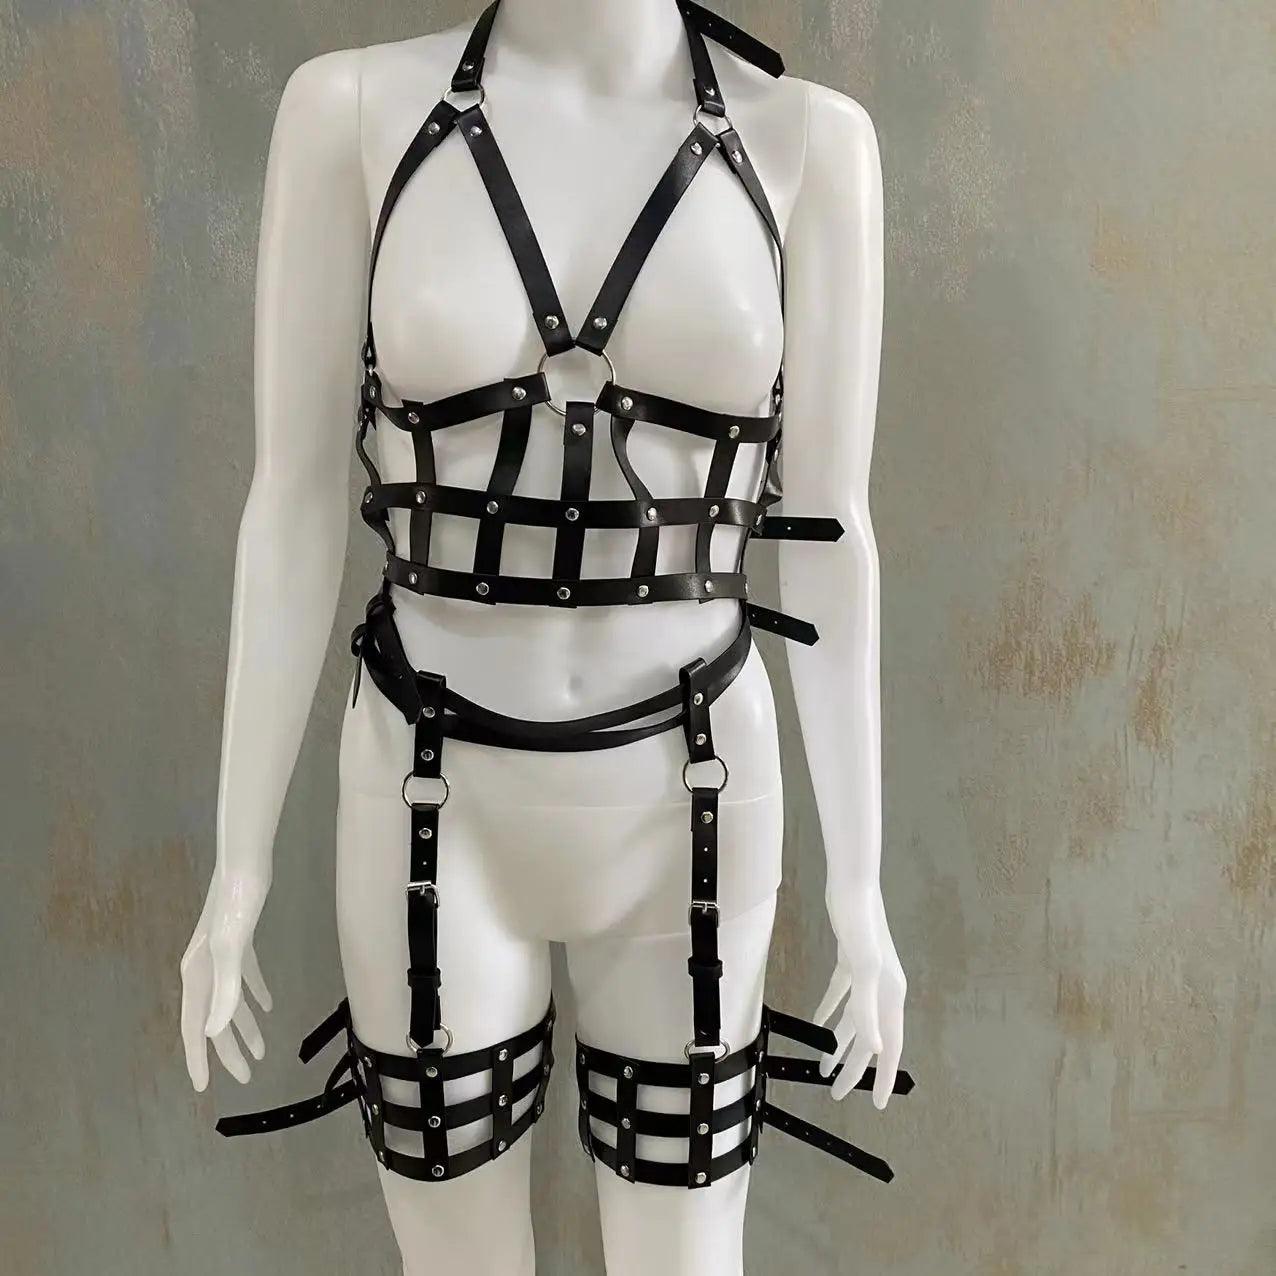 Exotiskt Underkläder Set med Sensuell Leksaksharnesk - WIQ